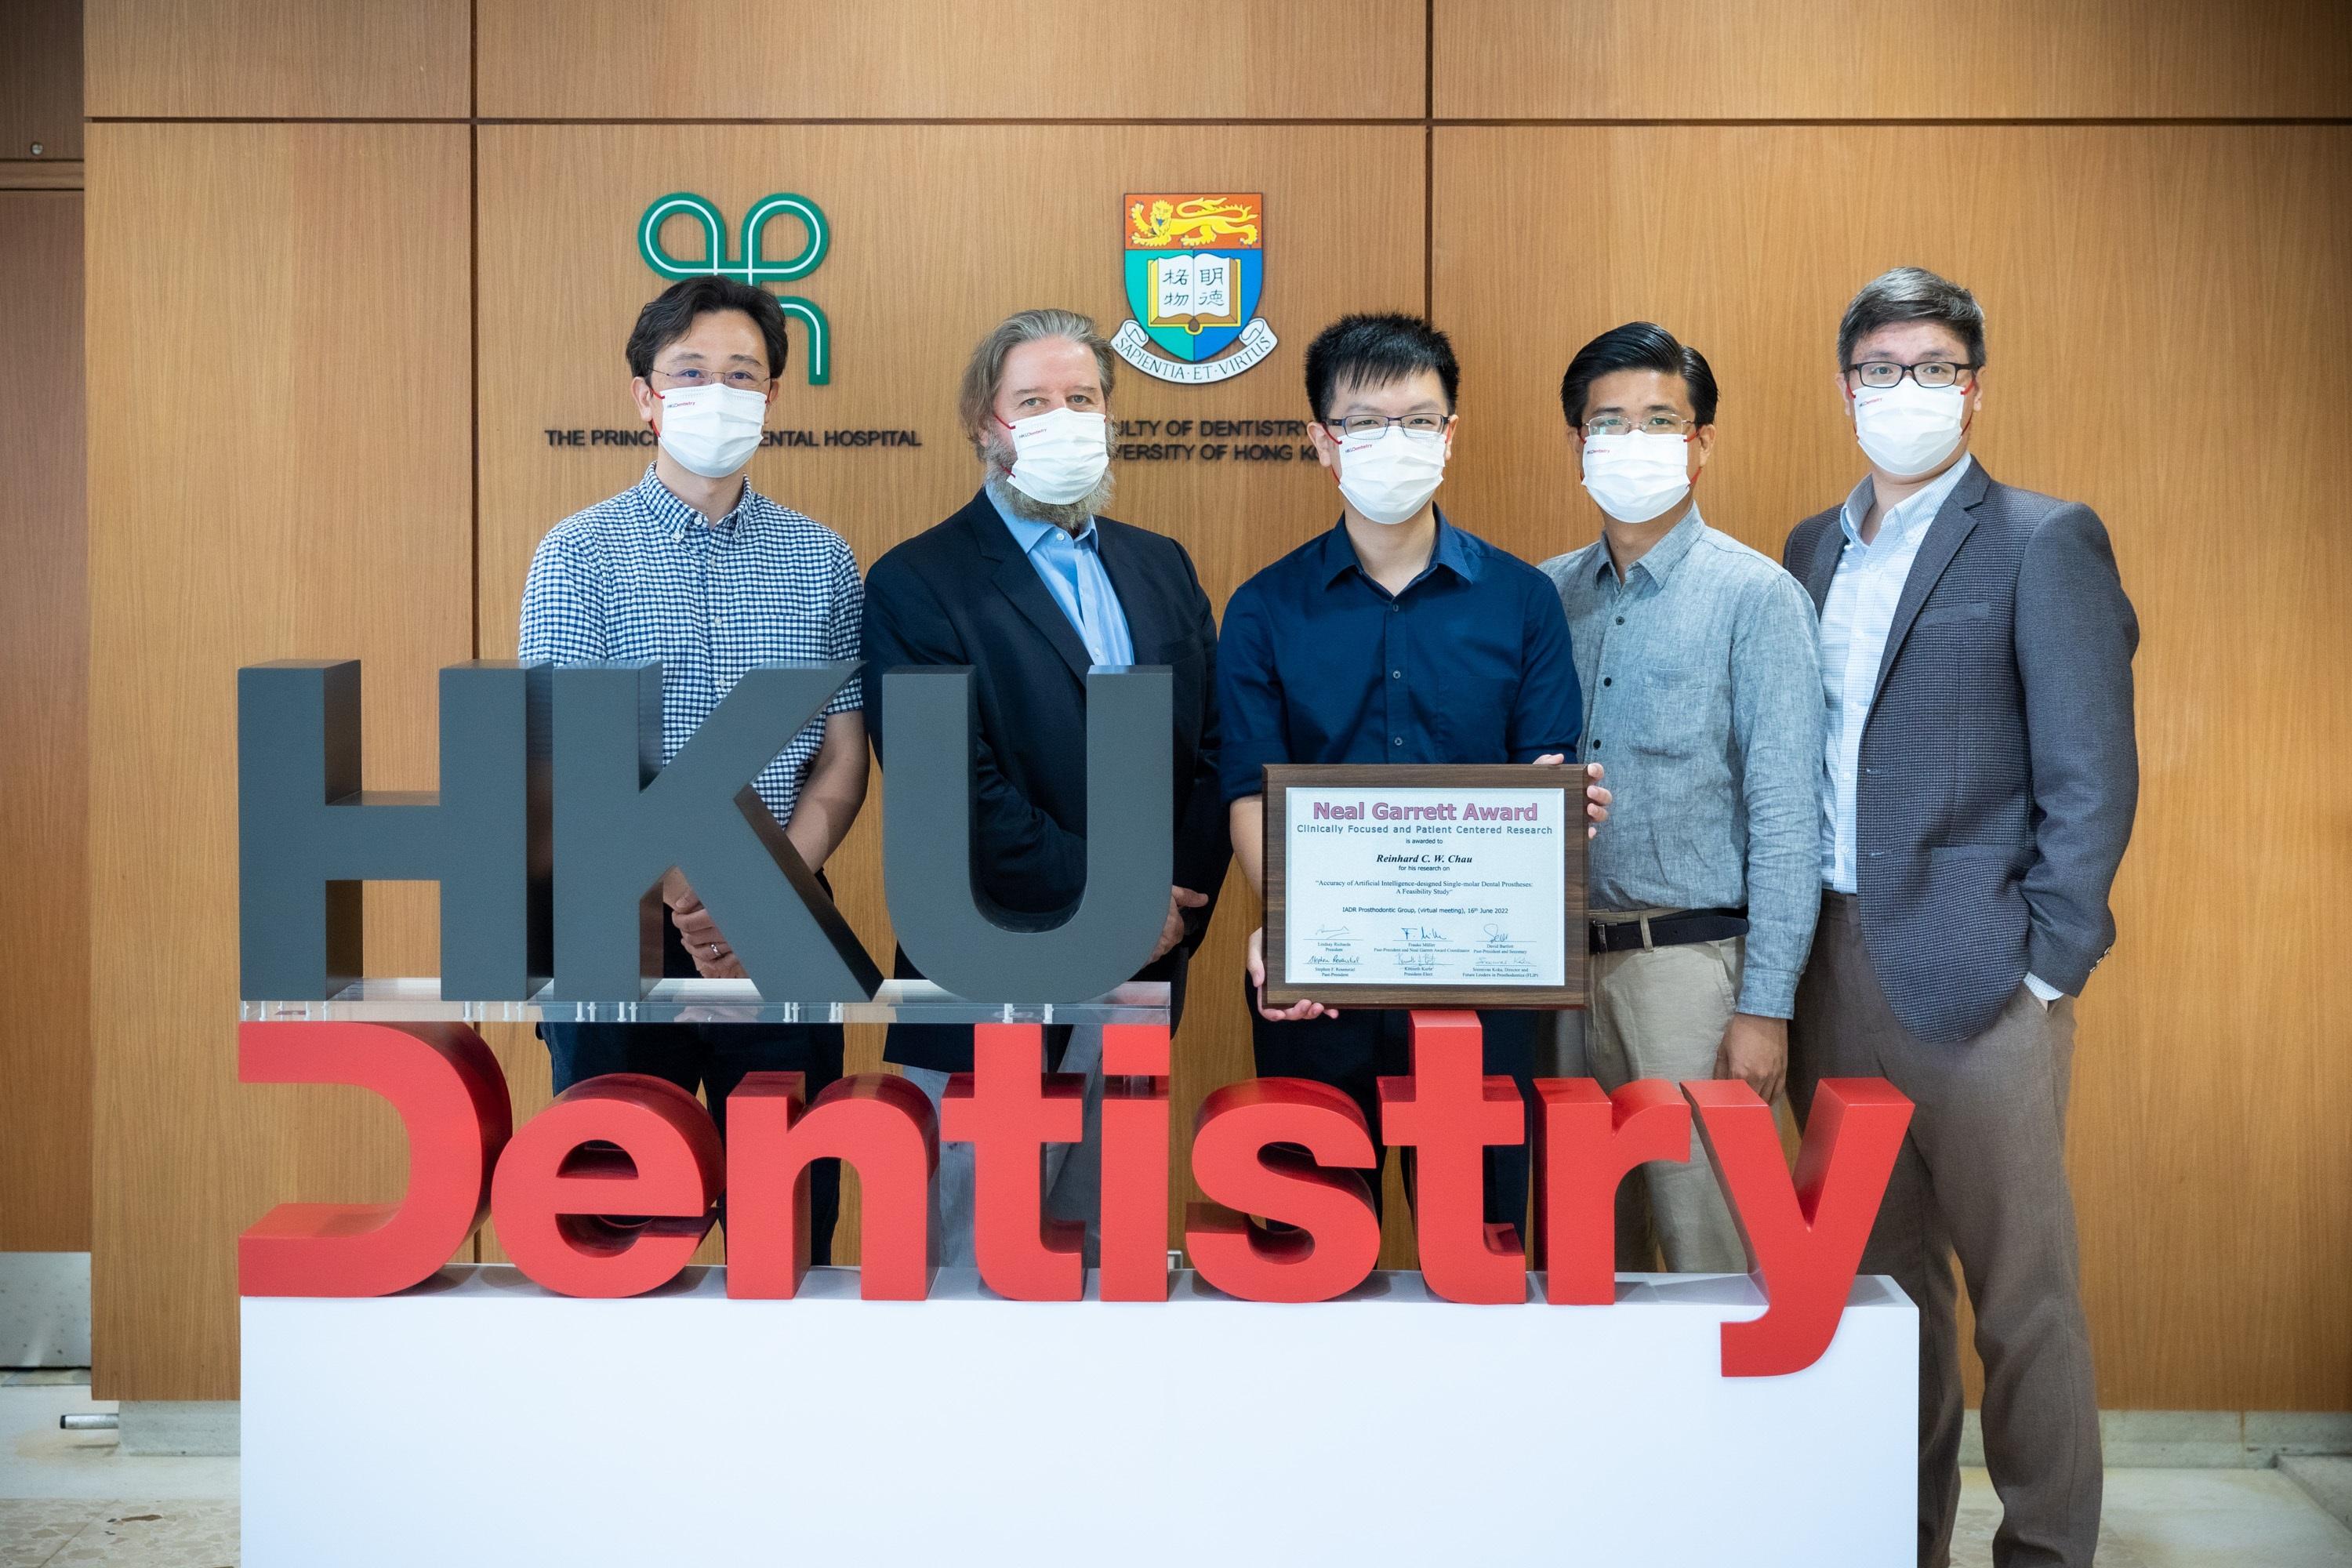 (右起) 林宇恒医生、Khaing Myat Thu医生、周俊宏医生、麦浩明教授和 熊体超博士